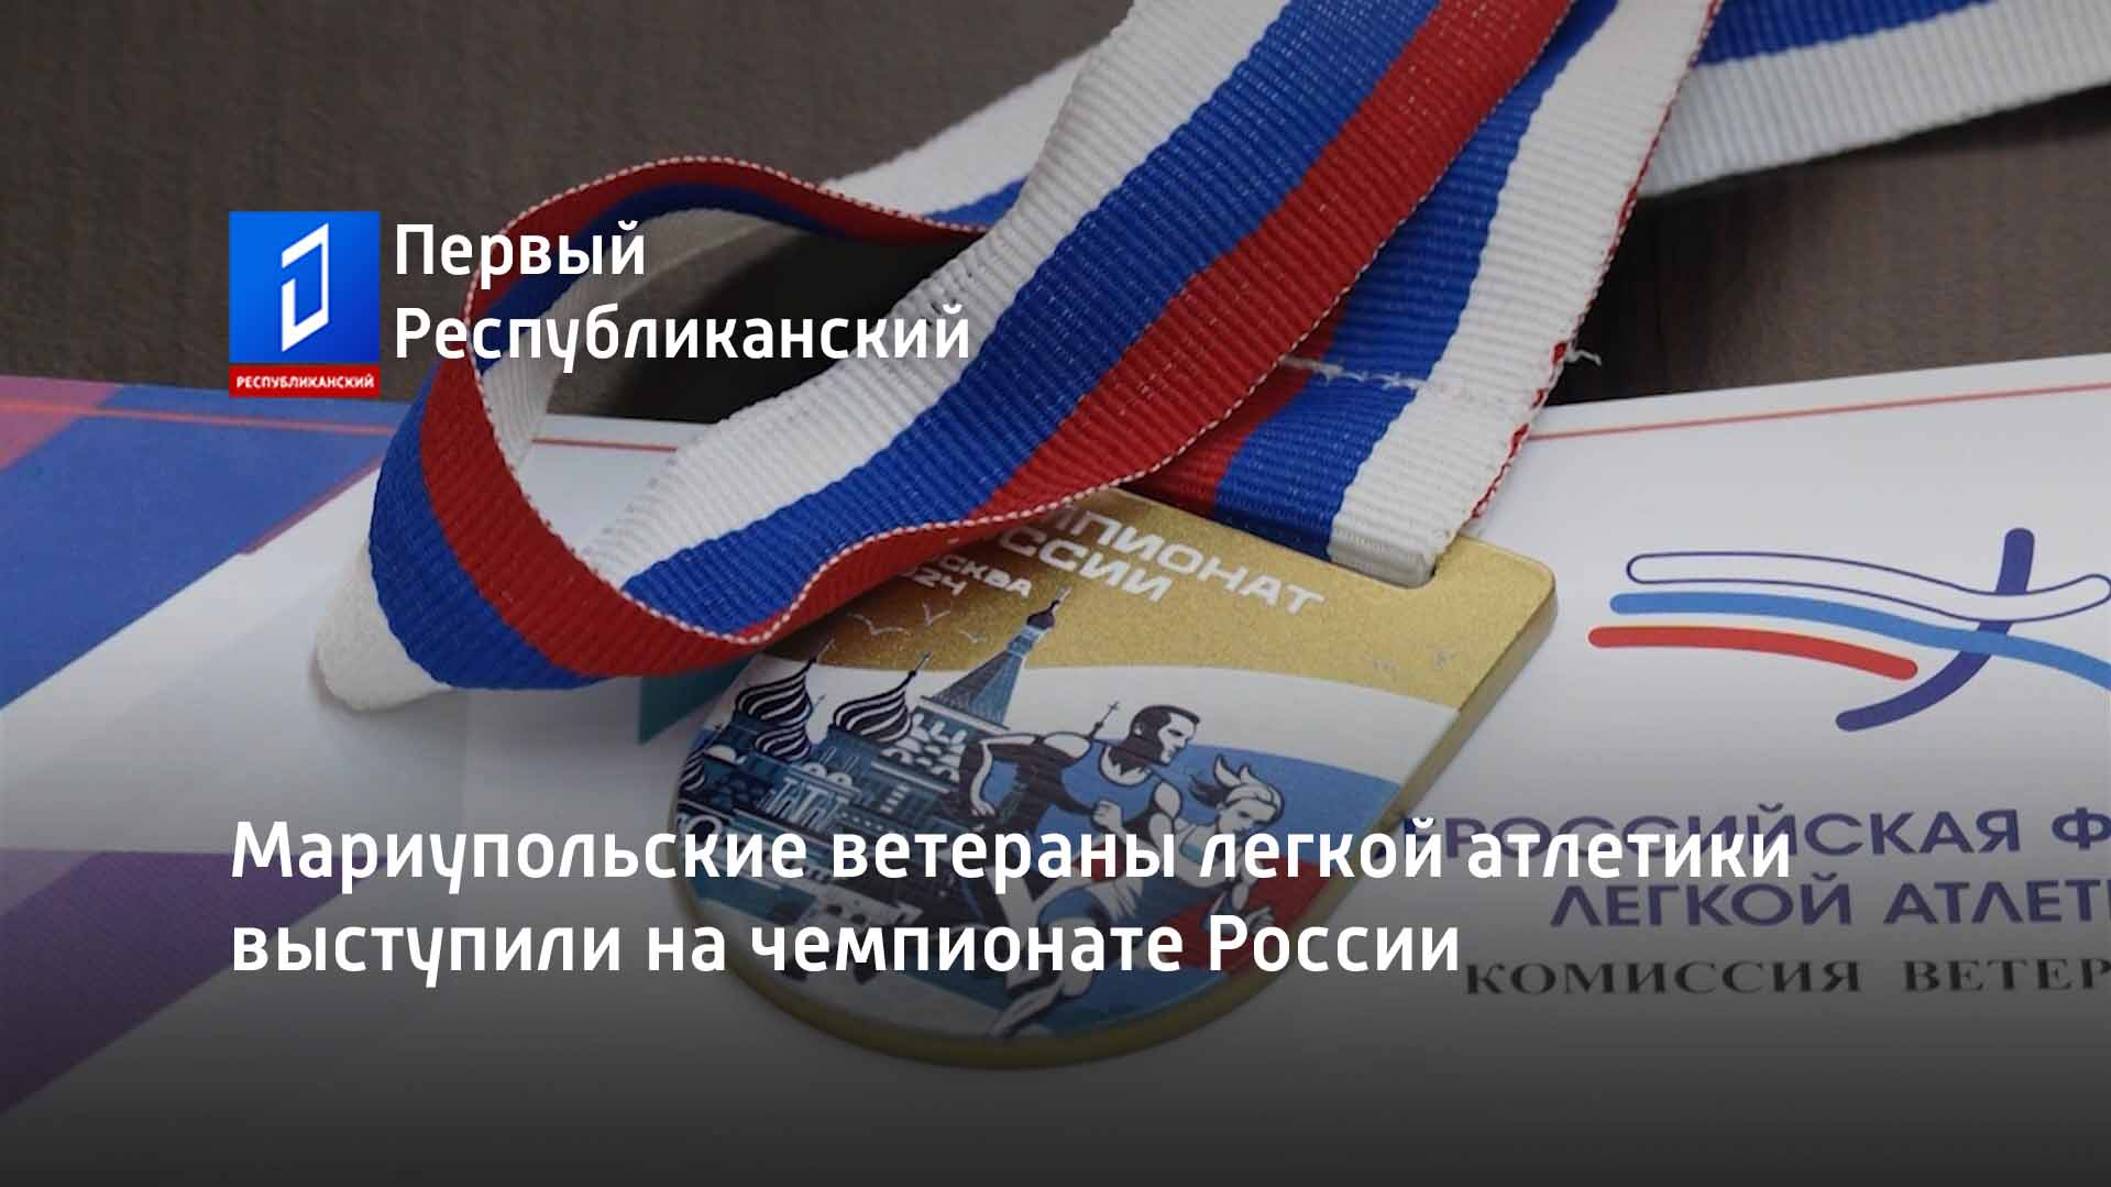 Мариупольские ветераны легкой атлетики выступили на чемпионате России